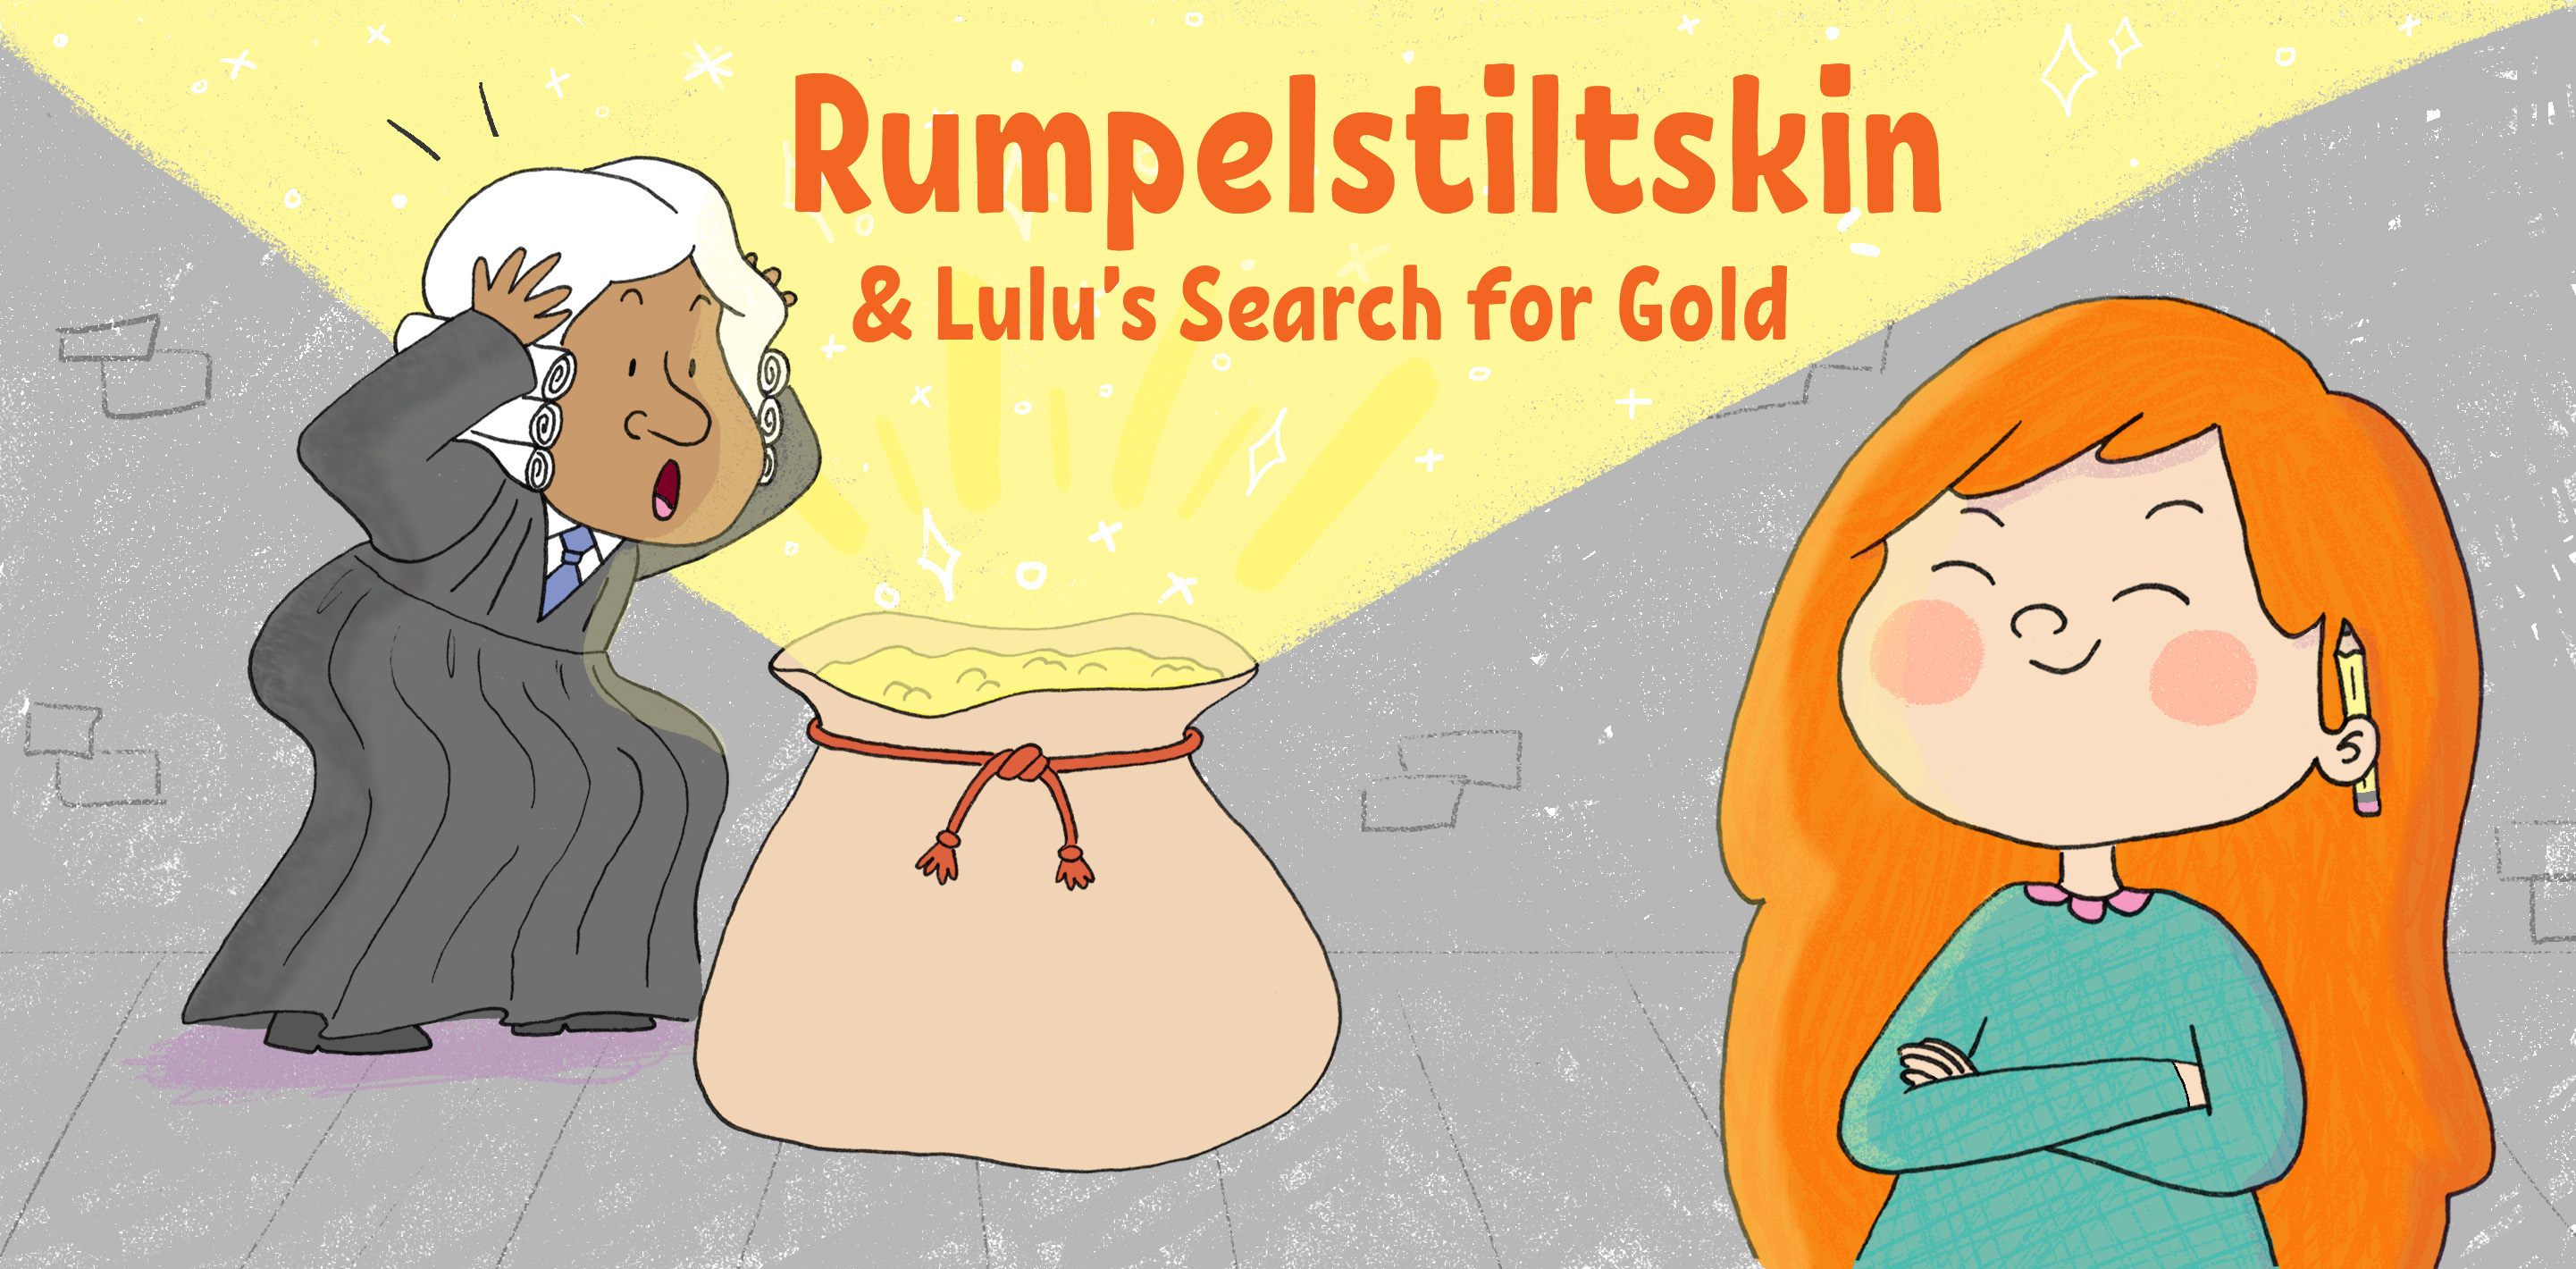 Rumpelstiltskin & Lulu’s Search for Gold by Ali Wilkinson